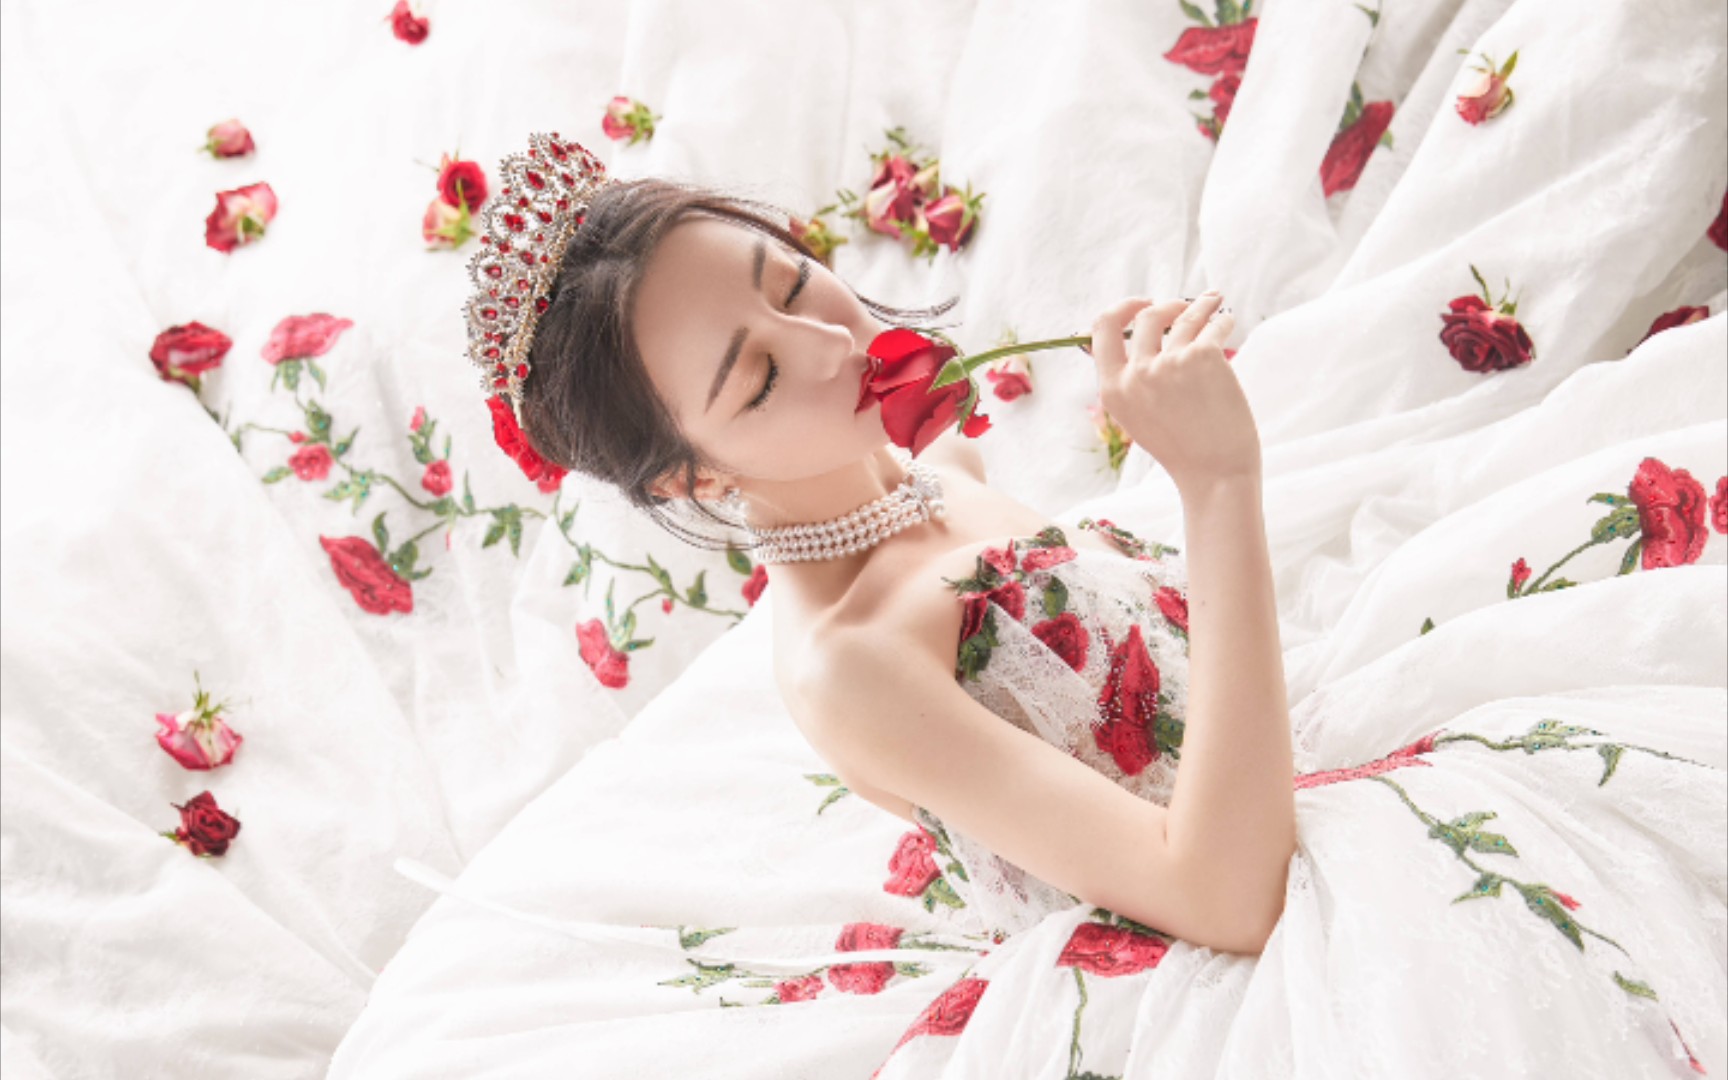 迪丽热巴红玫瑰婚纱图片